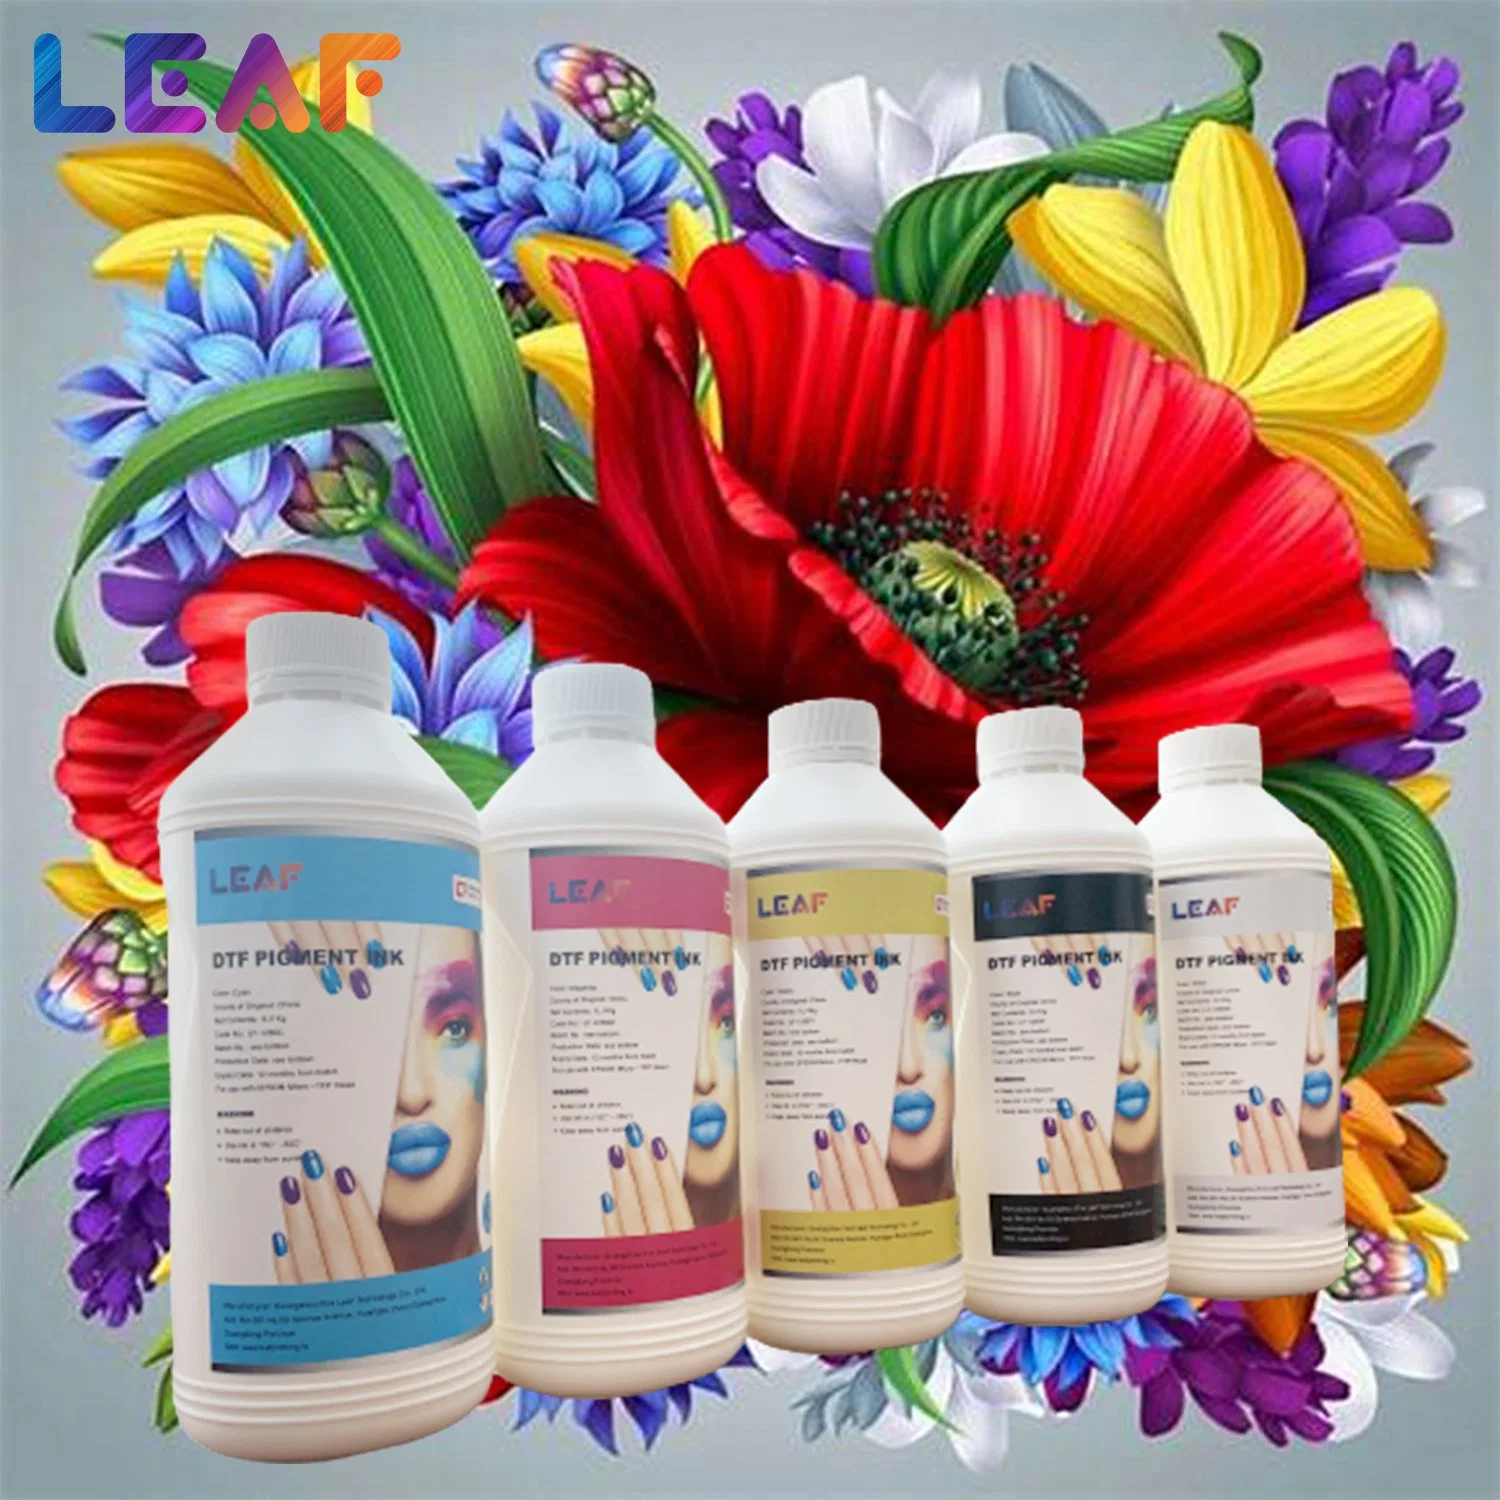 Leaf Premium Textile Pigment Dtf Film Ink Color Kit White Ink for 4720 I3200 Glow Printer Dtf Transfer